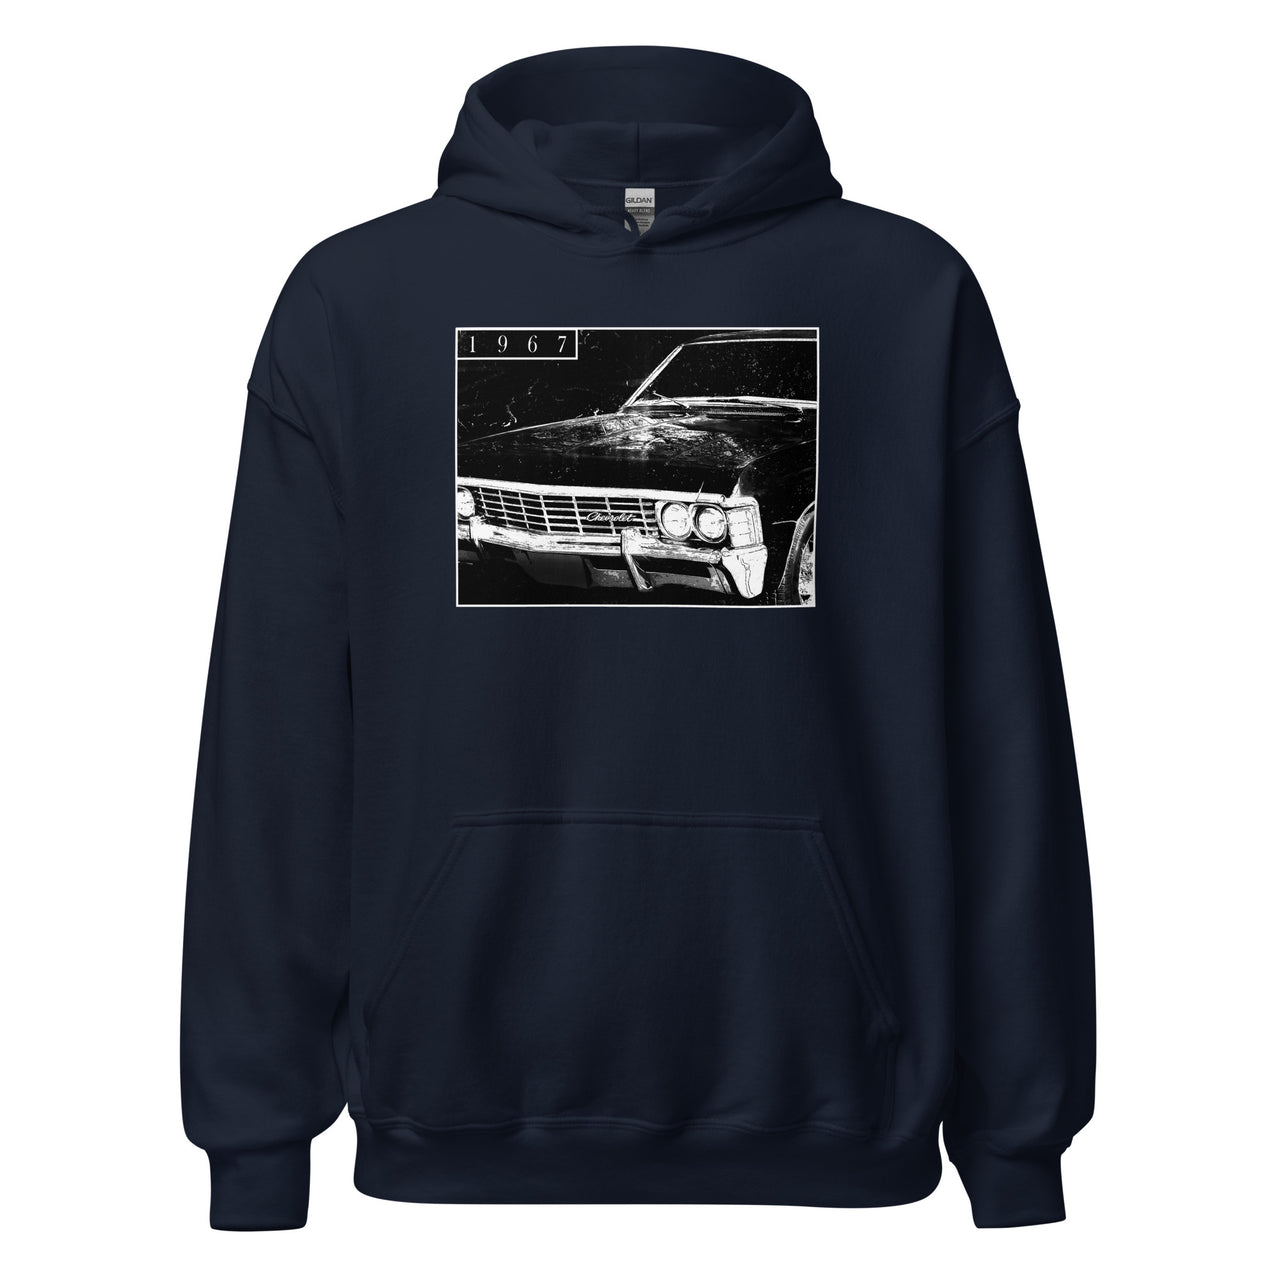 1967 Impala hoodie sweatshirt in navy